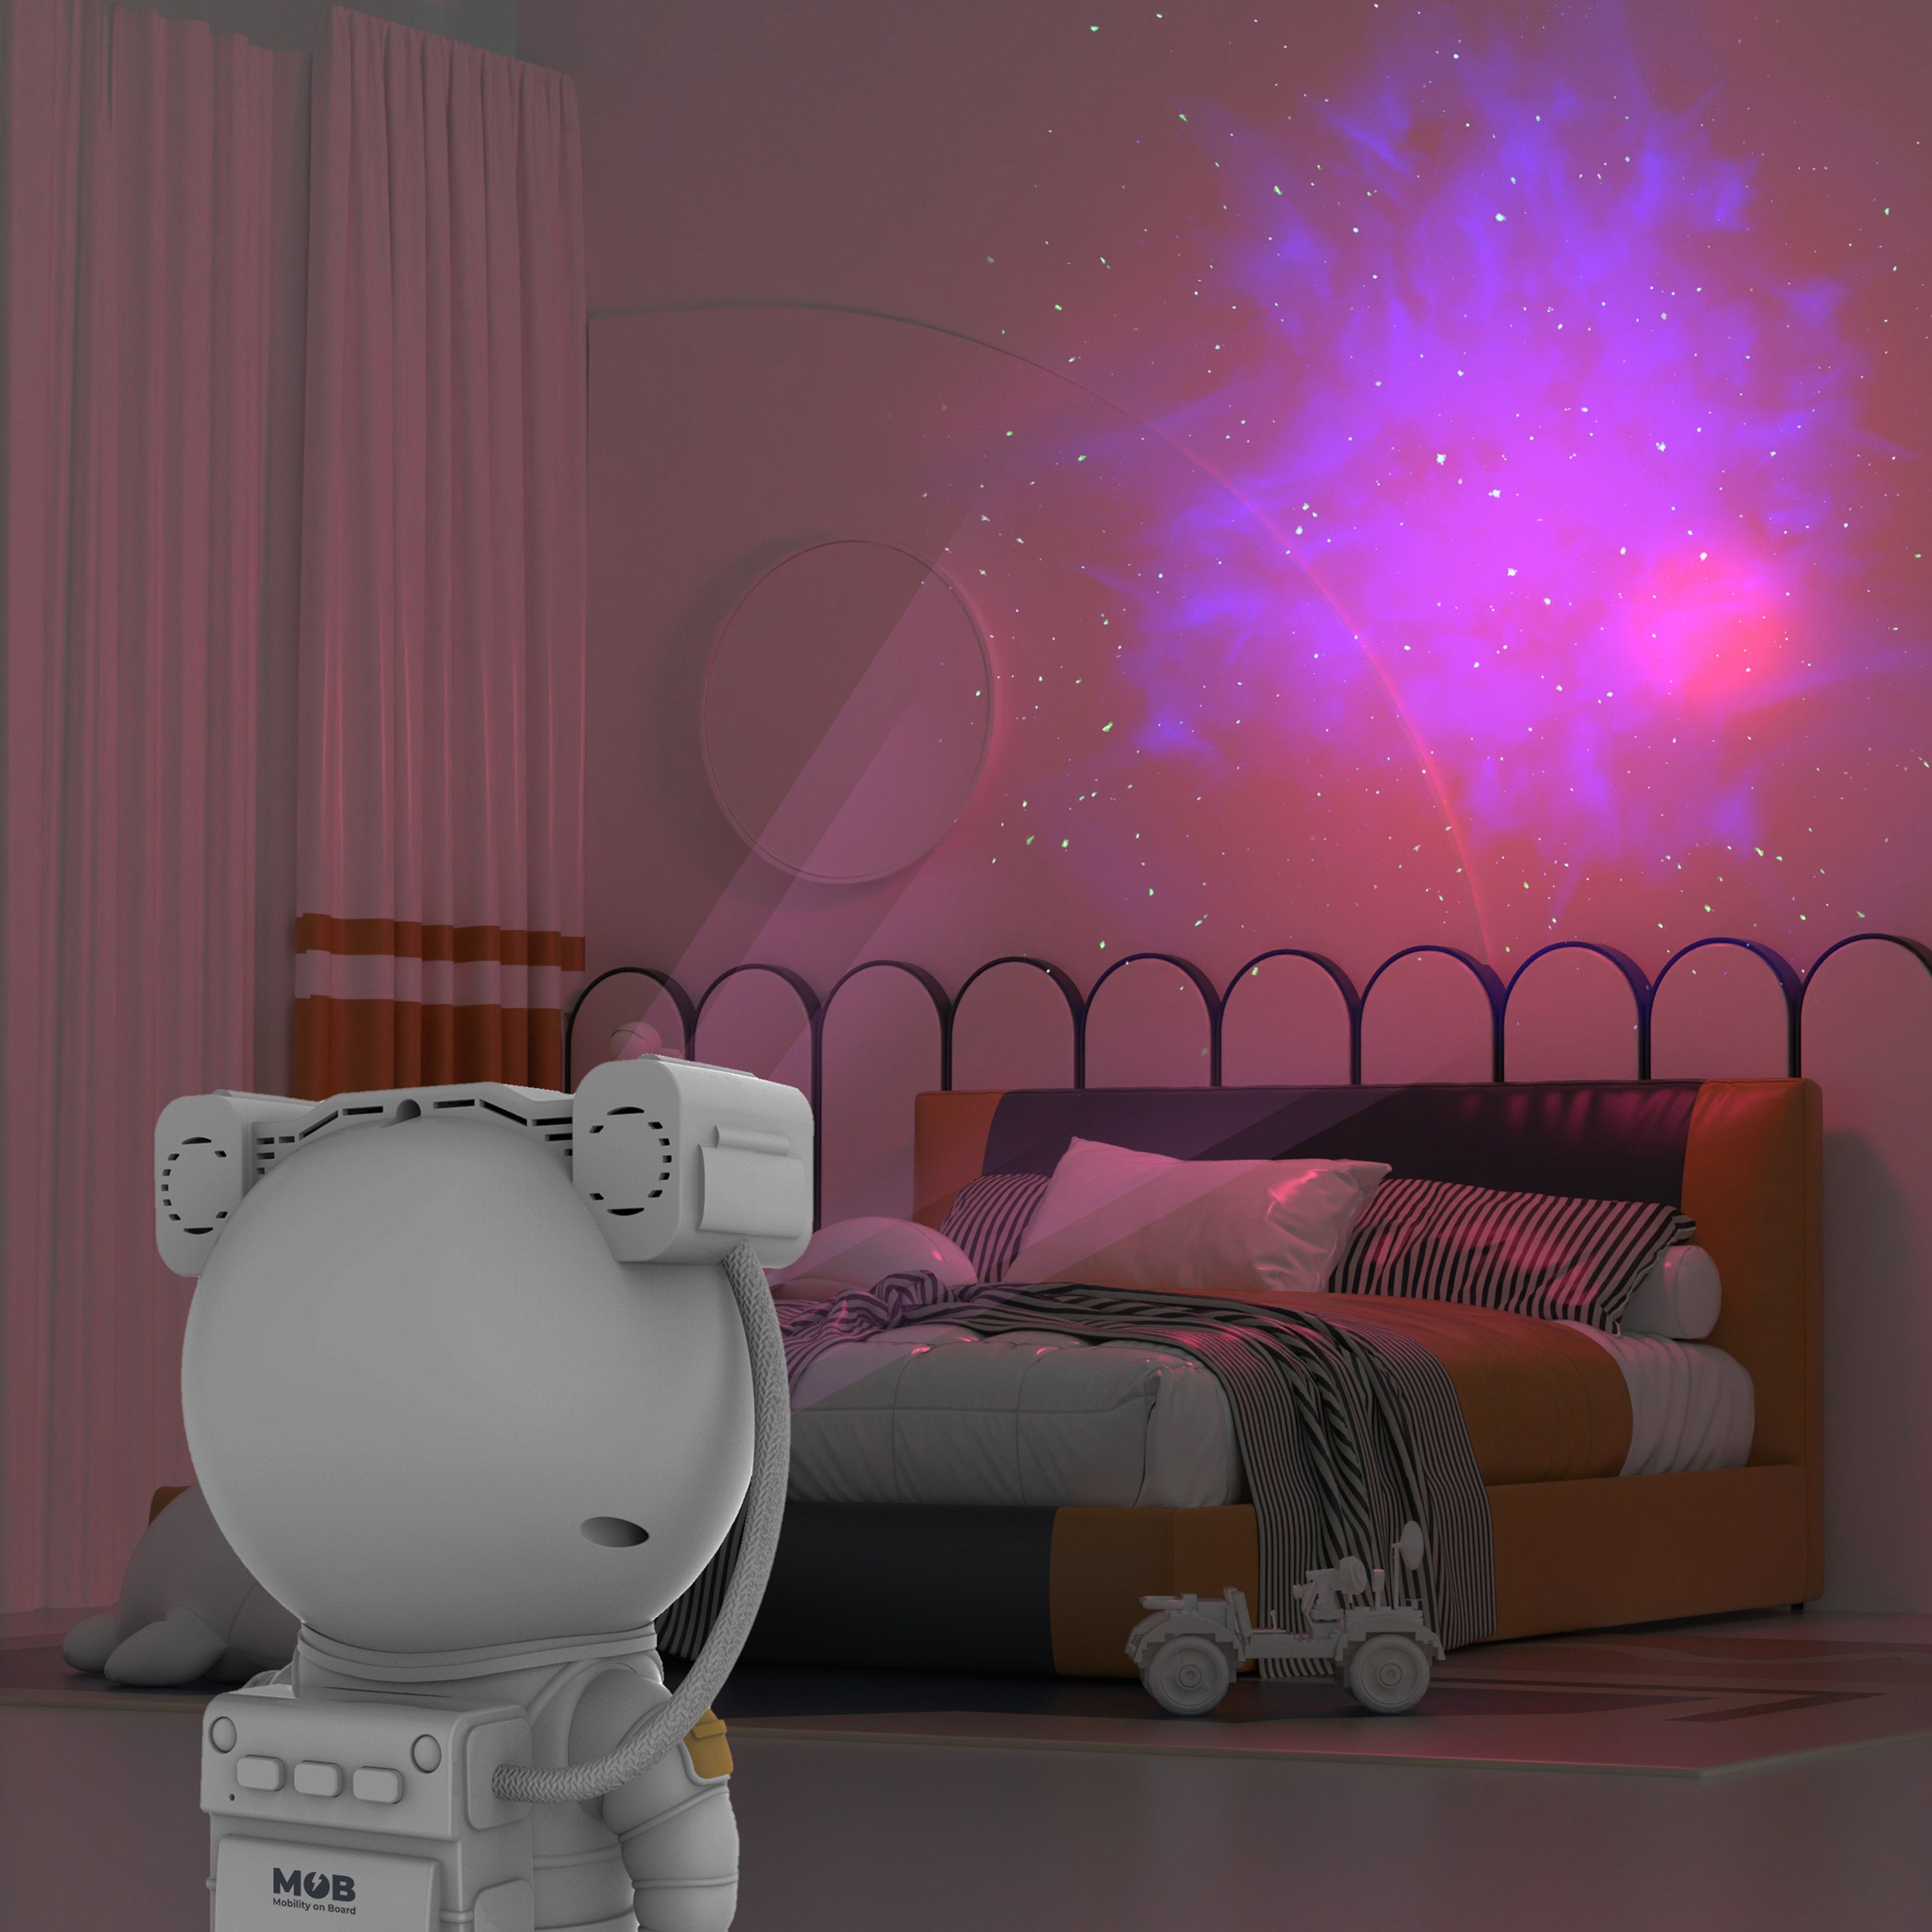 MOB - Projektor Galaxy Dreams4Kids Accessoires Living | way\